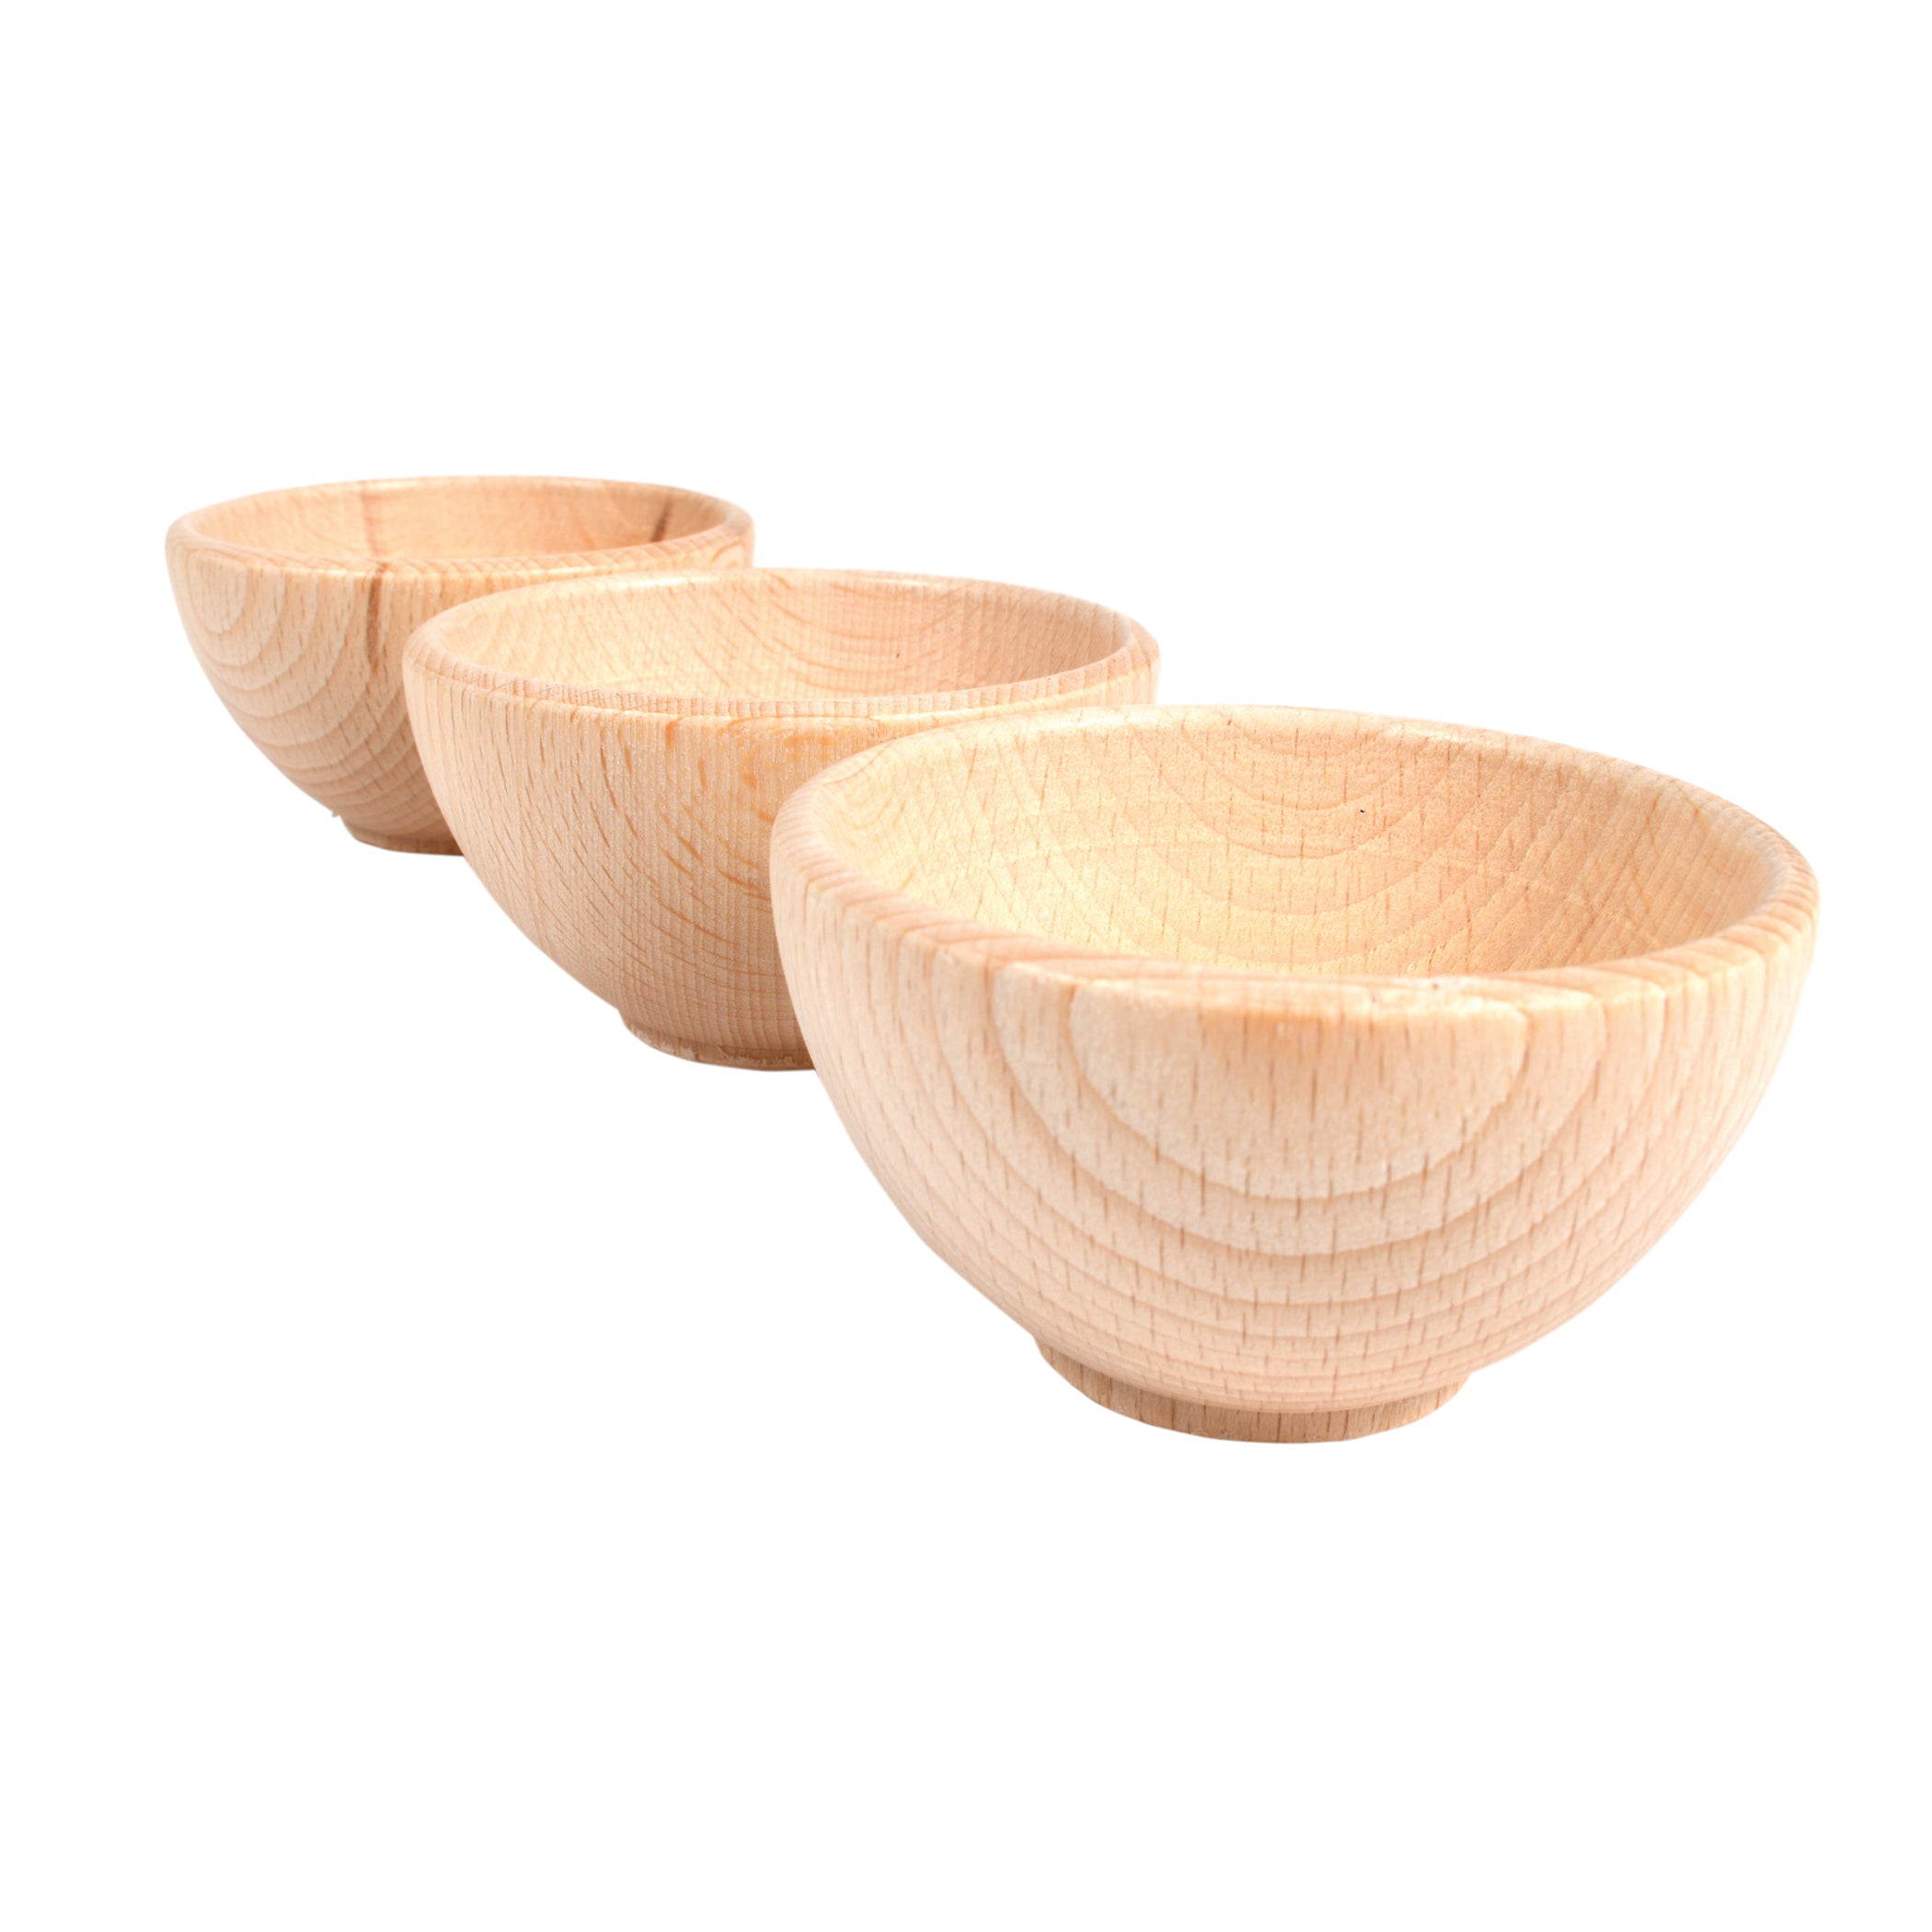 Wooden Bowls - Set of 3 - A1 School Supplies